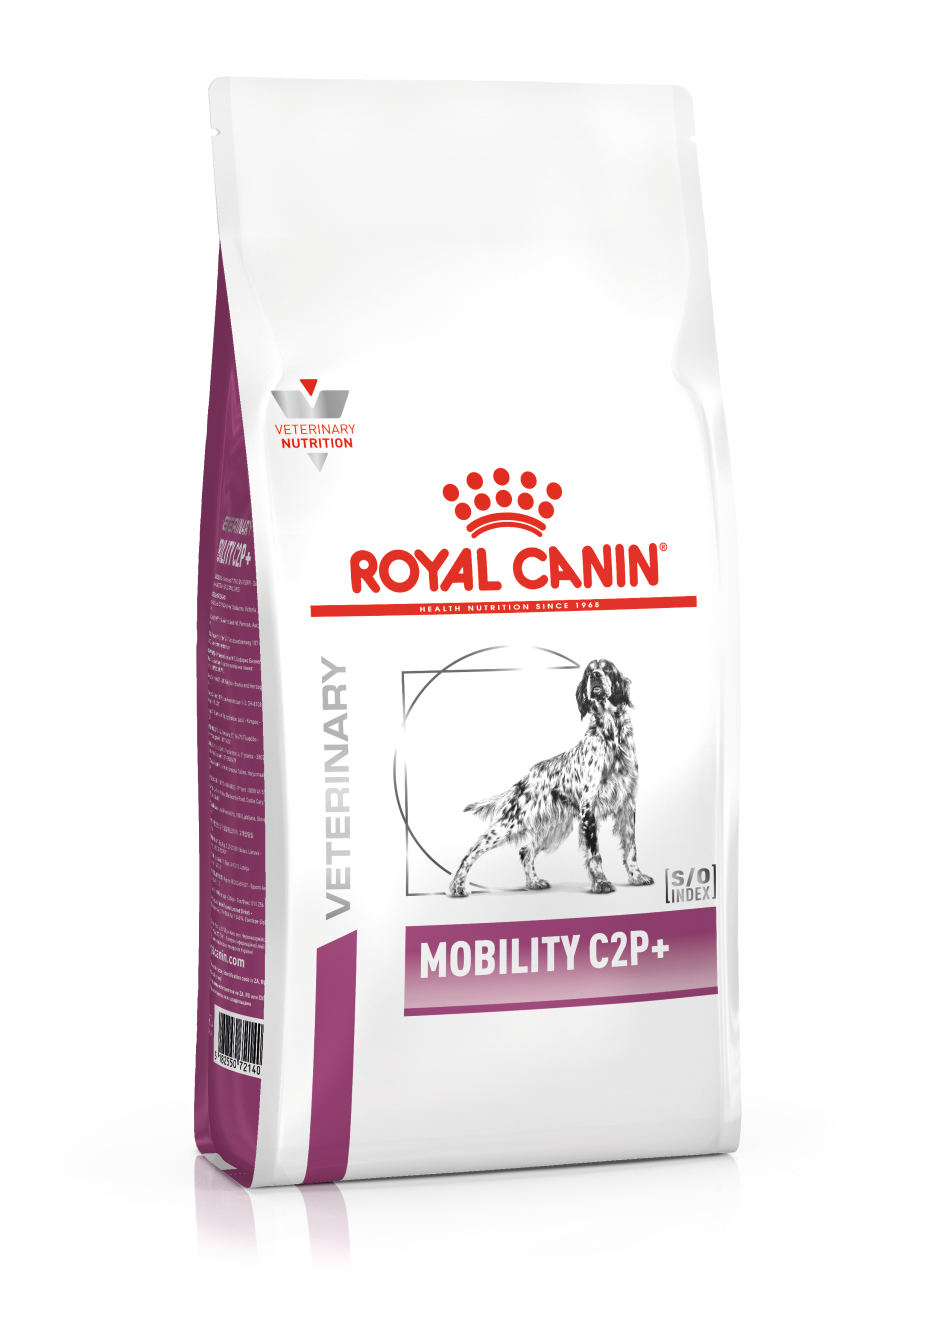 min met de klok mee Versterken Mobility C2P+ Dog - Voeding - ROYAL CANIN©